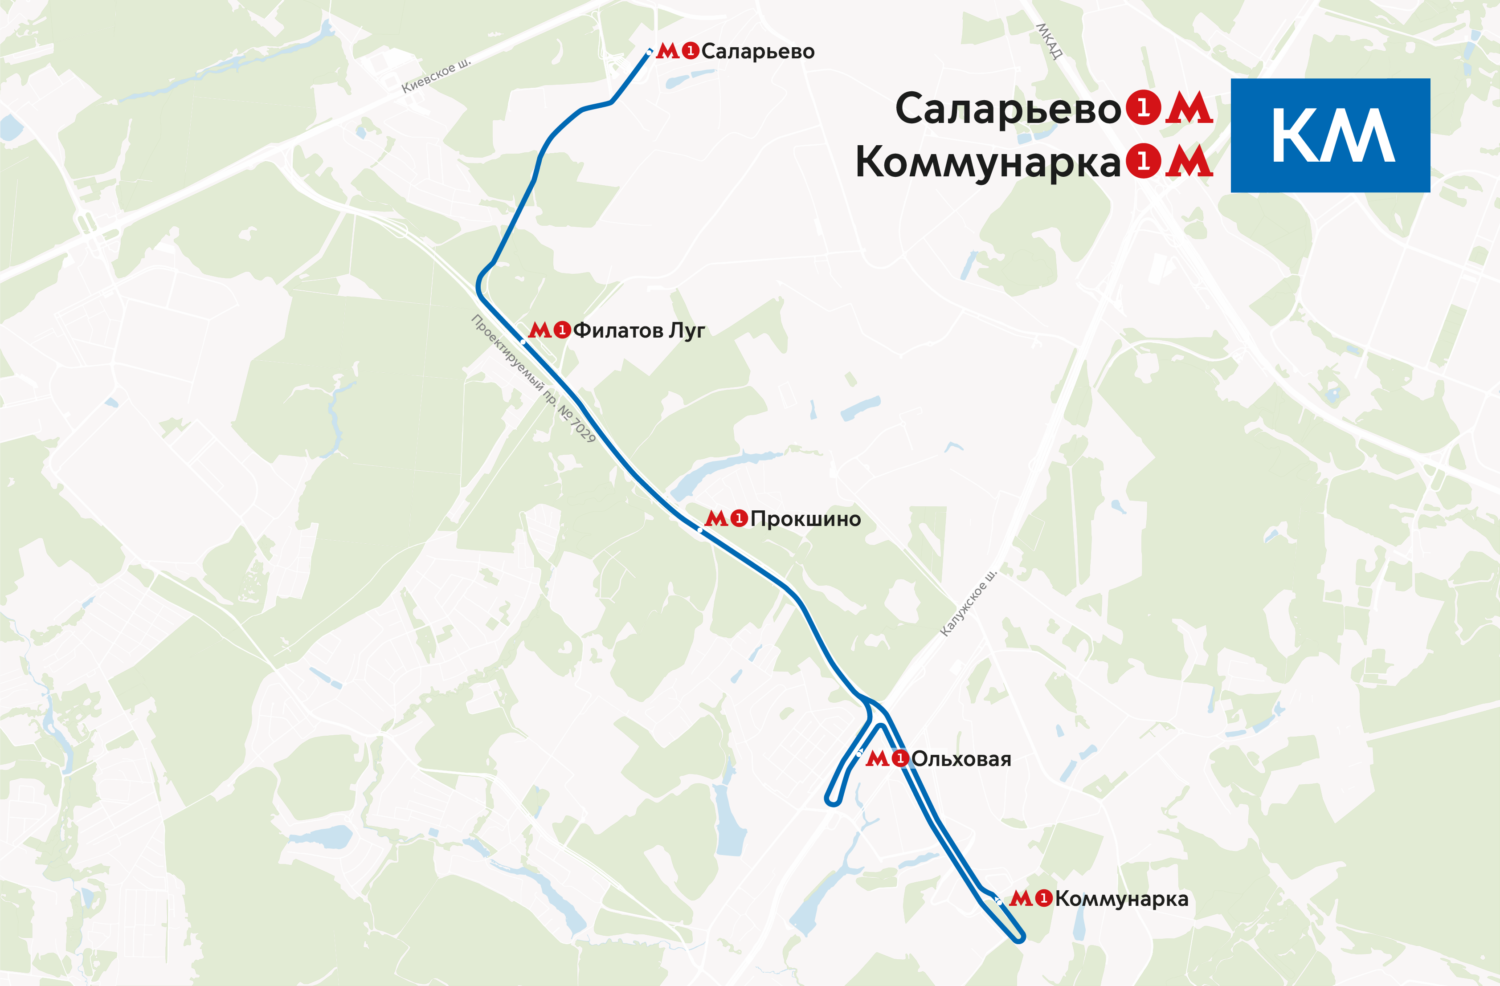 Автобусы запустят на время закрытия участка Сокольнической линии метро